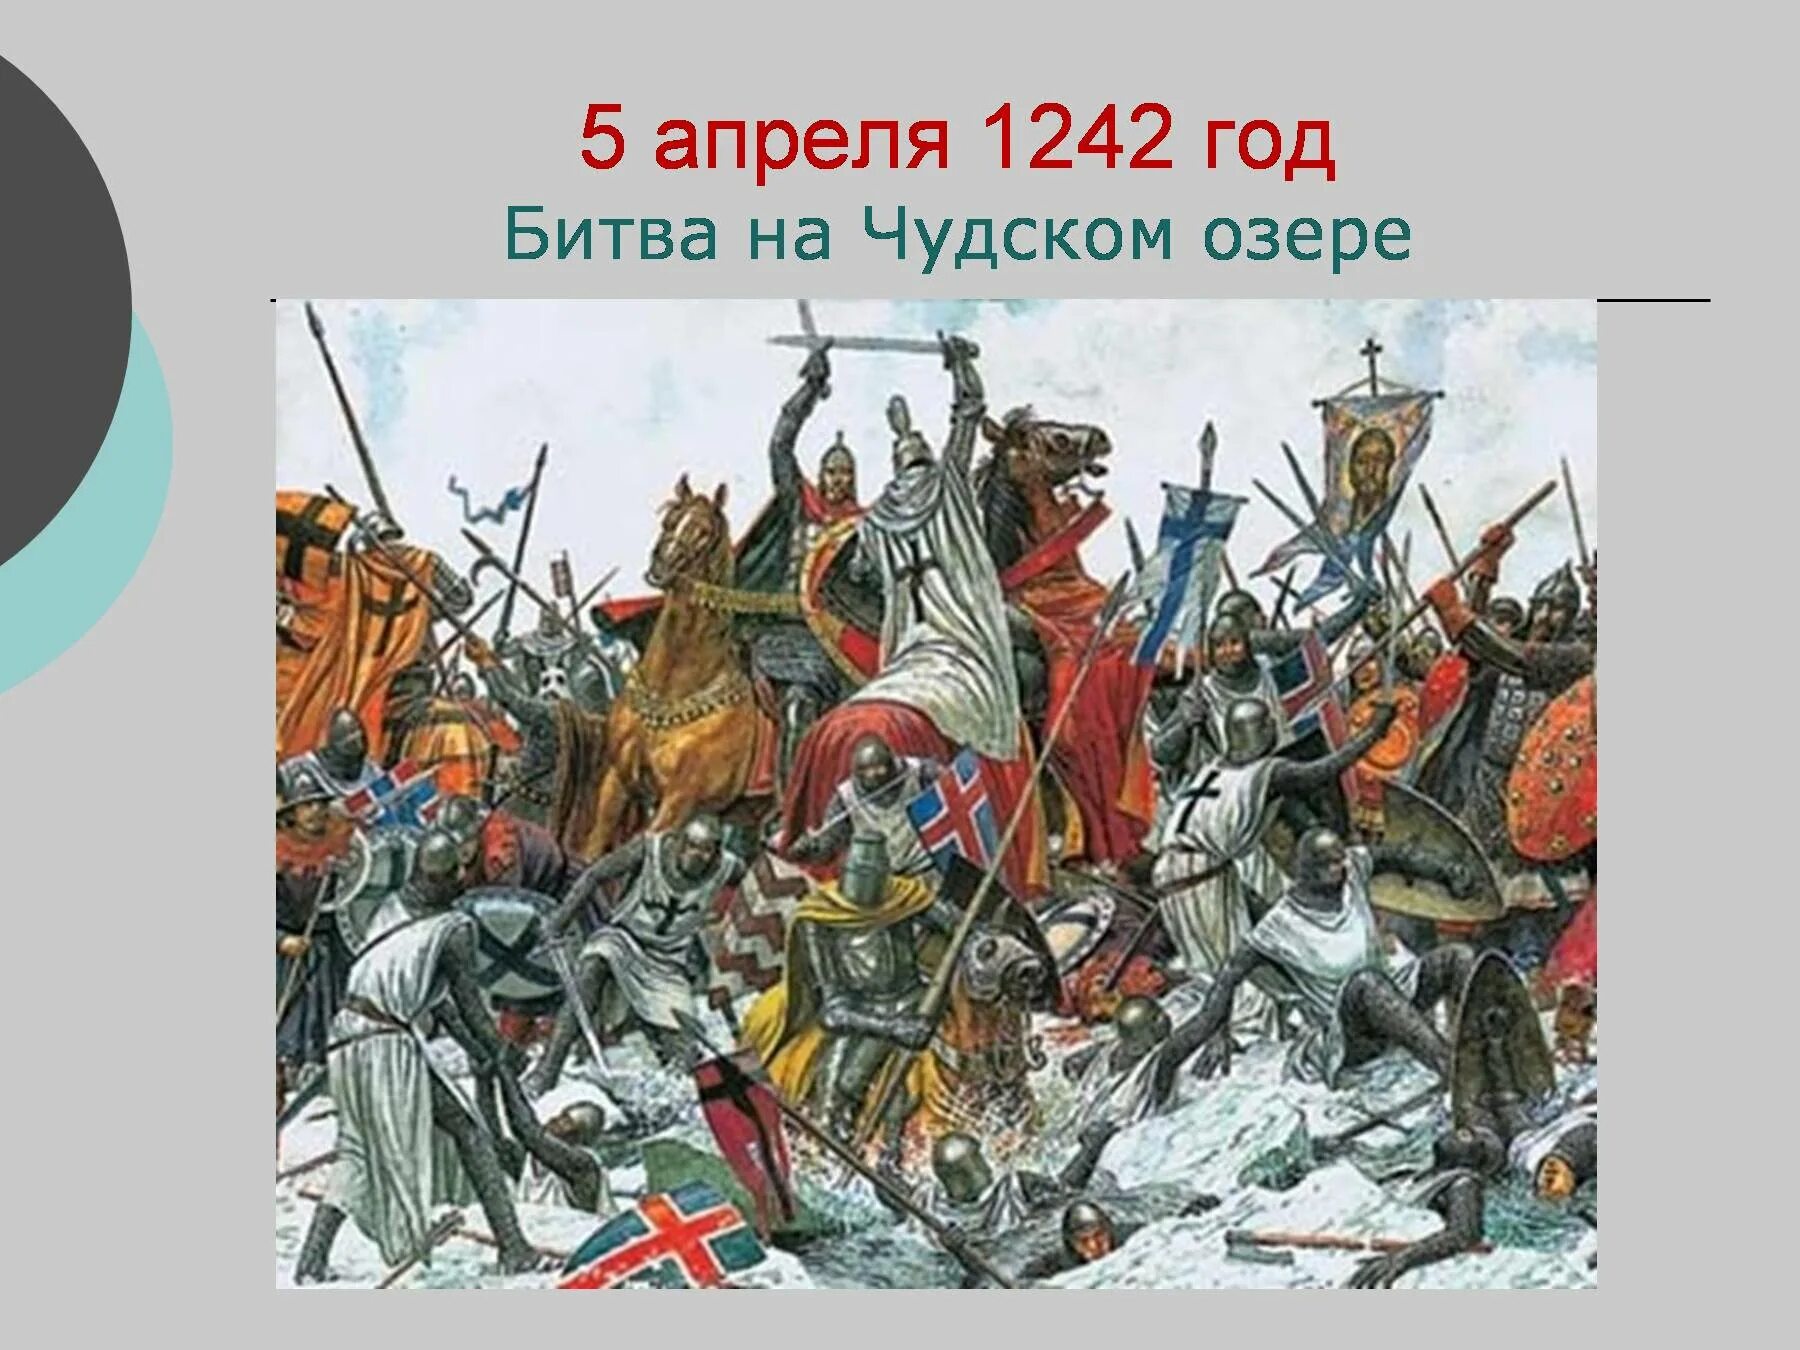 Рыцари крестоносцы вторглись в русские земли. Битва Ледовое побоище 1242. Ледовое побоище 1242 Маторин.